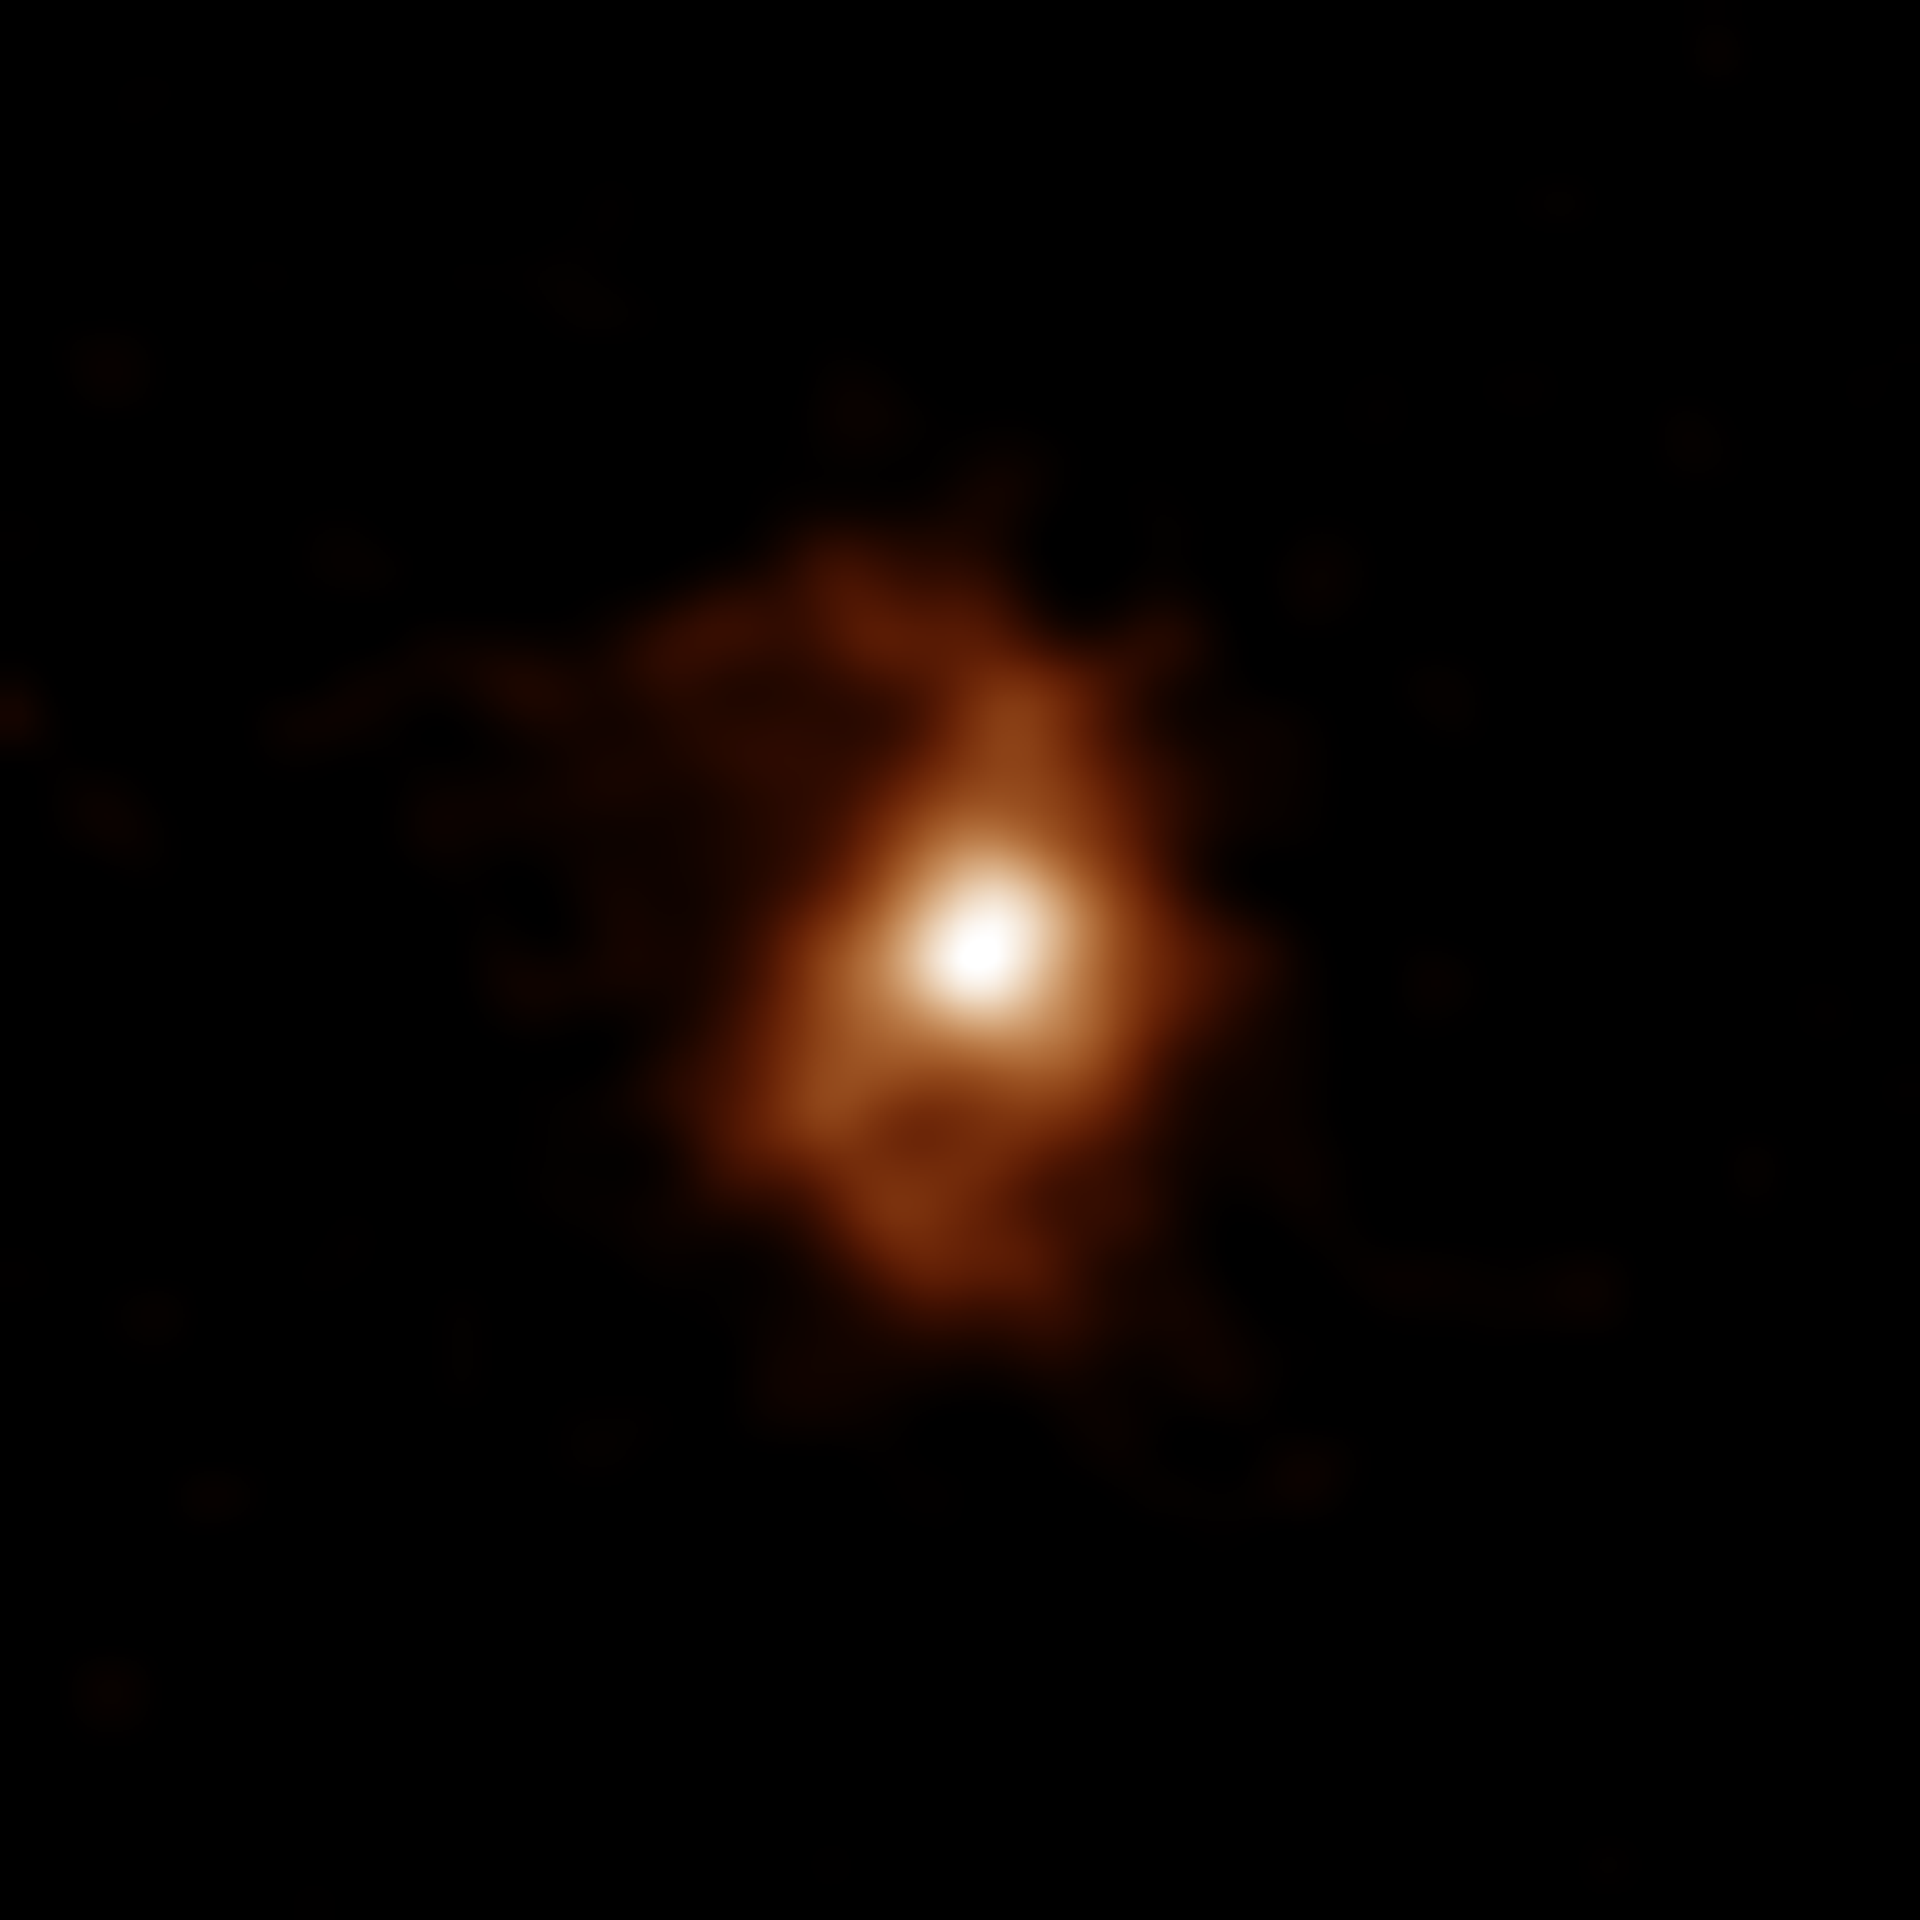 Descoberta mais antiga galáxia espiral já observada que se formou pouco depois do Big Bang (FOTO) - Sputnik Brasil, 1920, 22.05.2021